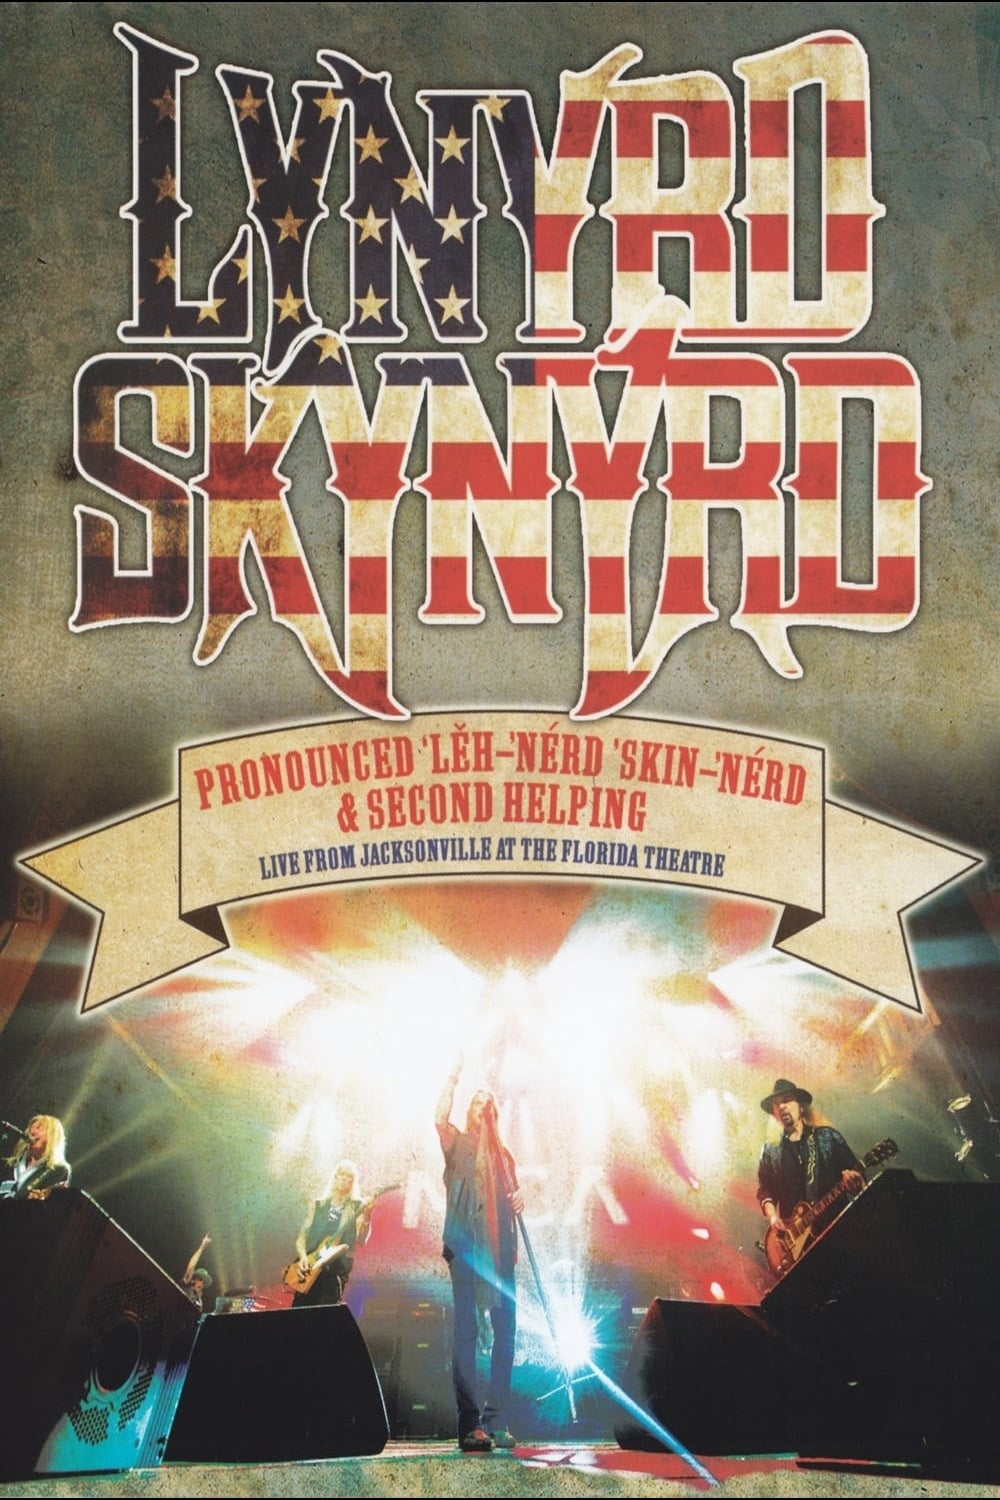 Lynyrd Skynyrd: Pronounced ’Lěh-’nérd ’Skin-’nérd & Second Helping